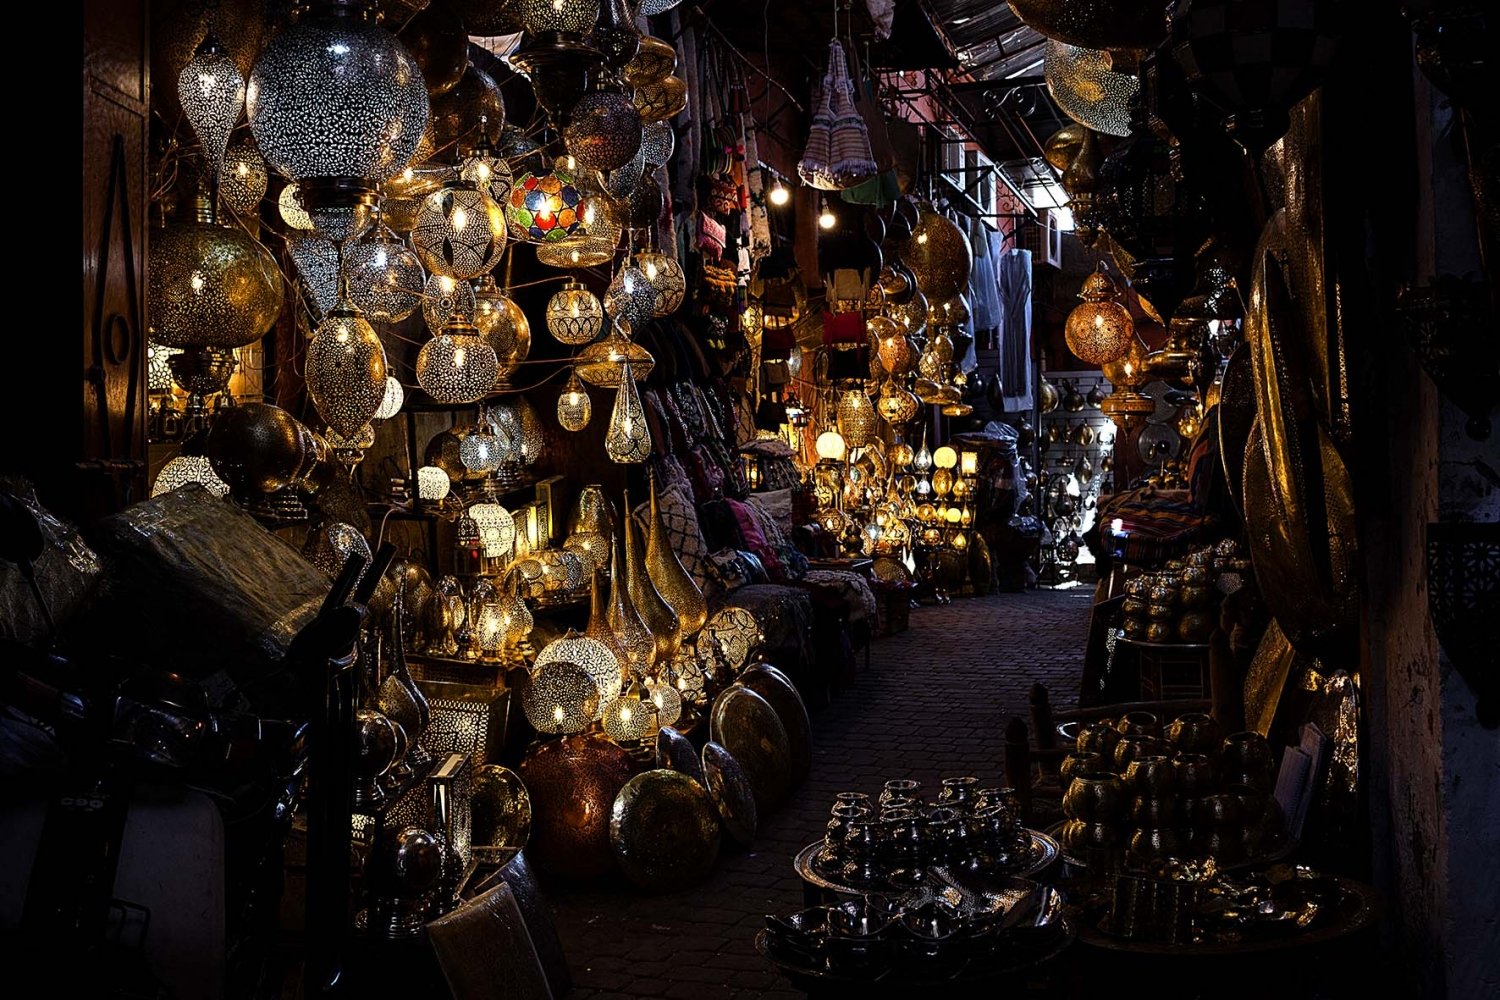 Cosa vedere a Marrakech